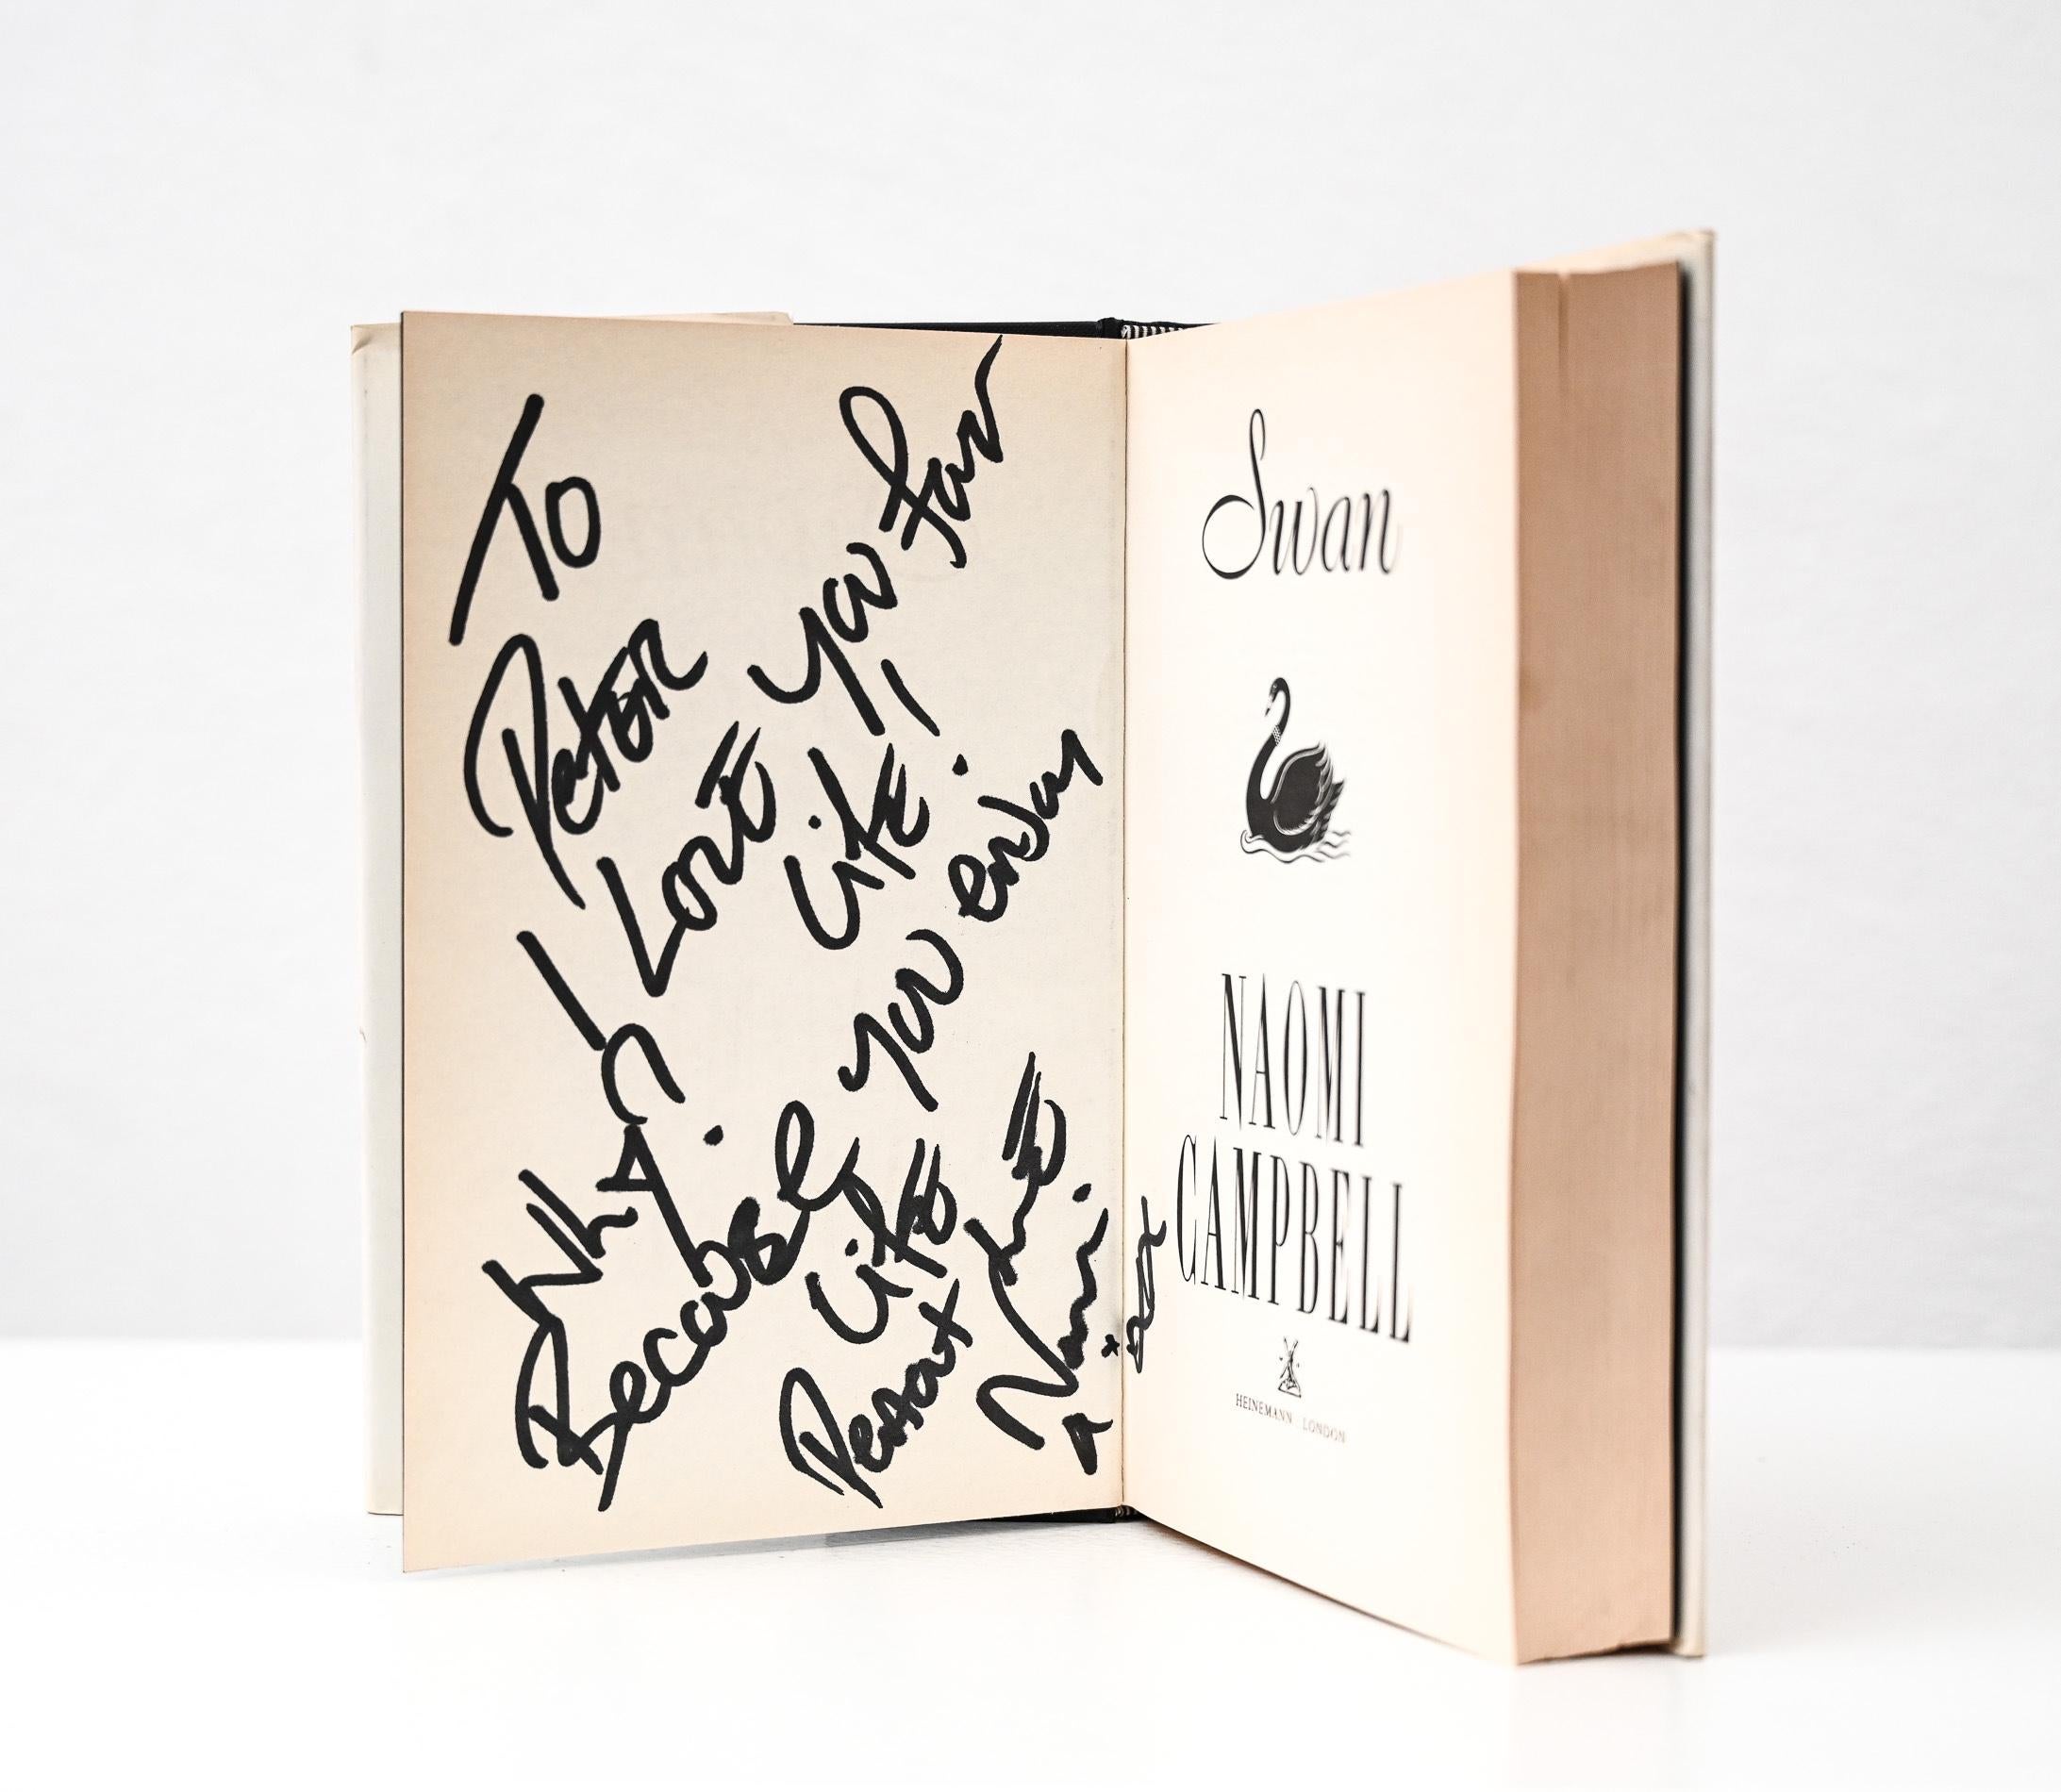 Signierte Ausgabe von Naomi Campbells Roman Swan
- signiert und gewidmet von Naomi Campbell dem deutschen Modefotografen und Filmregisseur Peter Lindbergh
Provenienz: Die Privatbibliothek von Peter Lindbergh in Paris. 